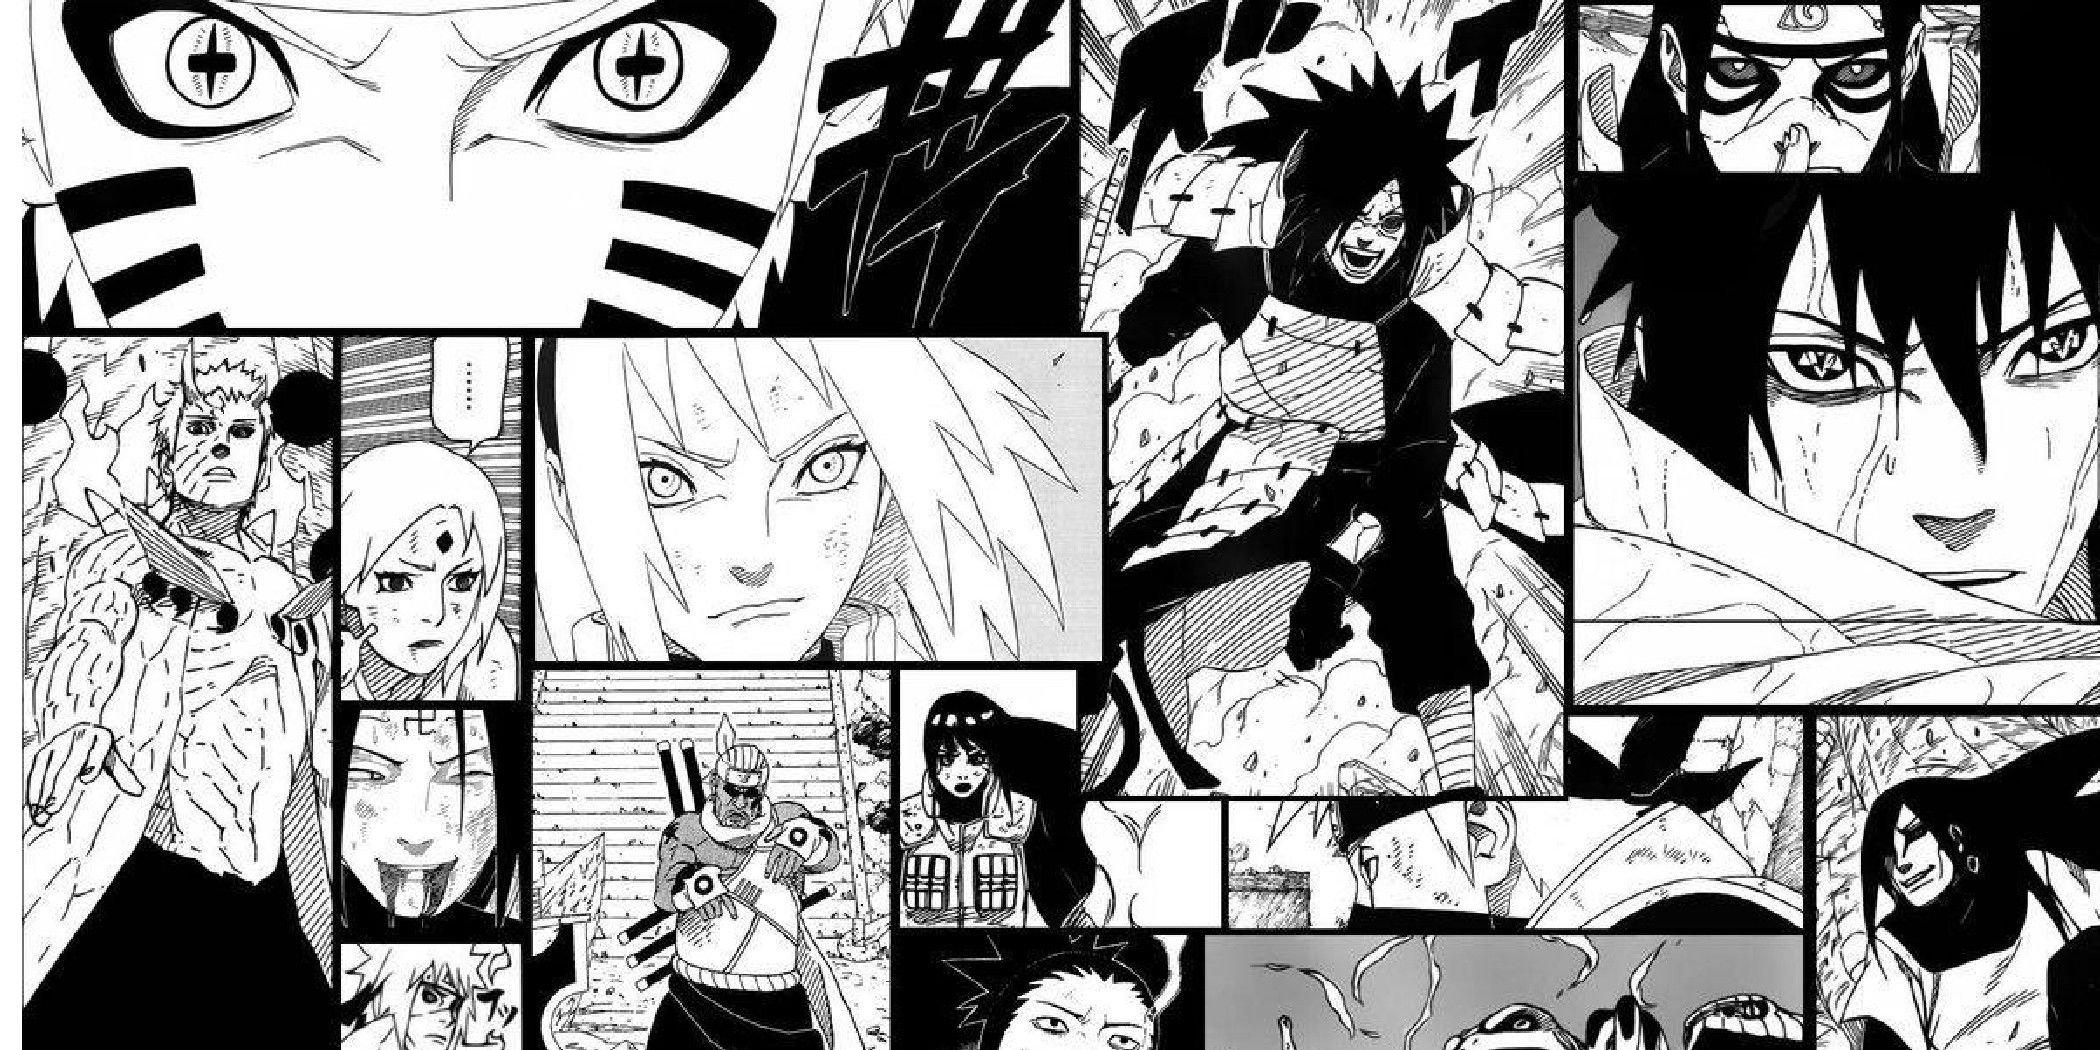 Naruto Shippuden manga panels